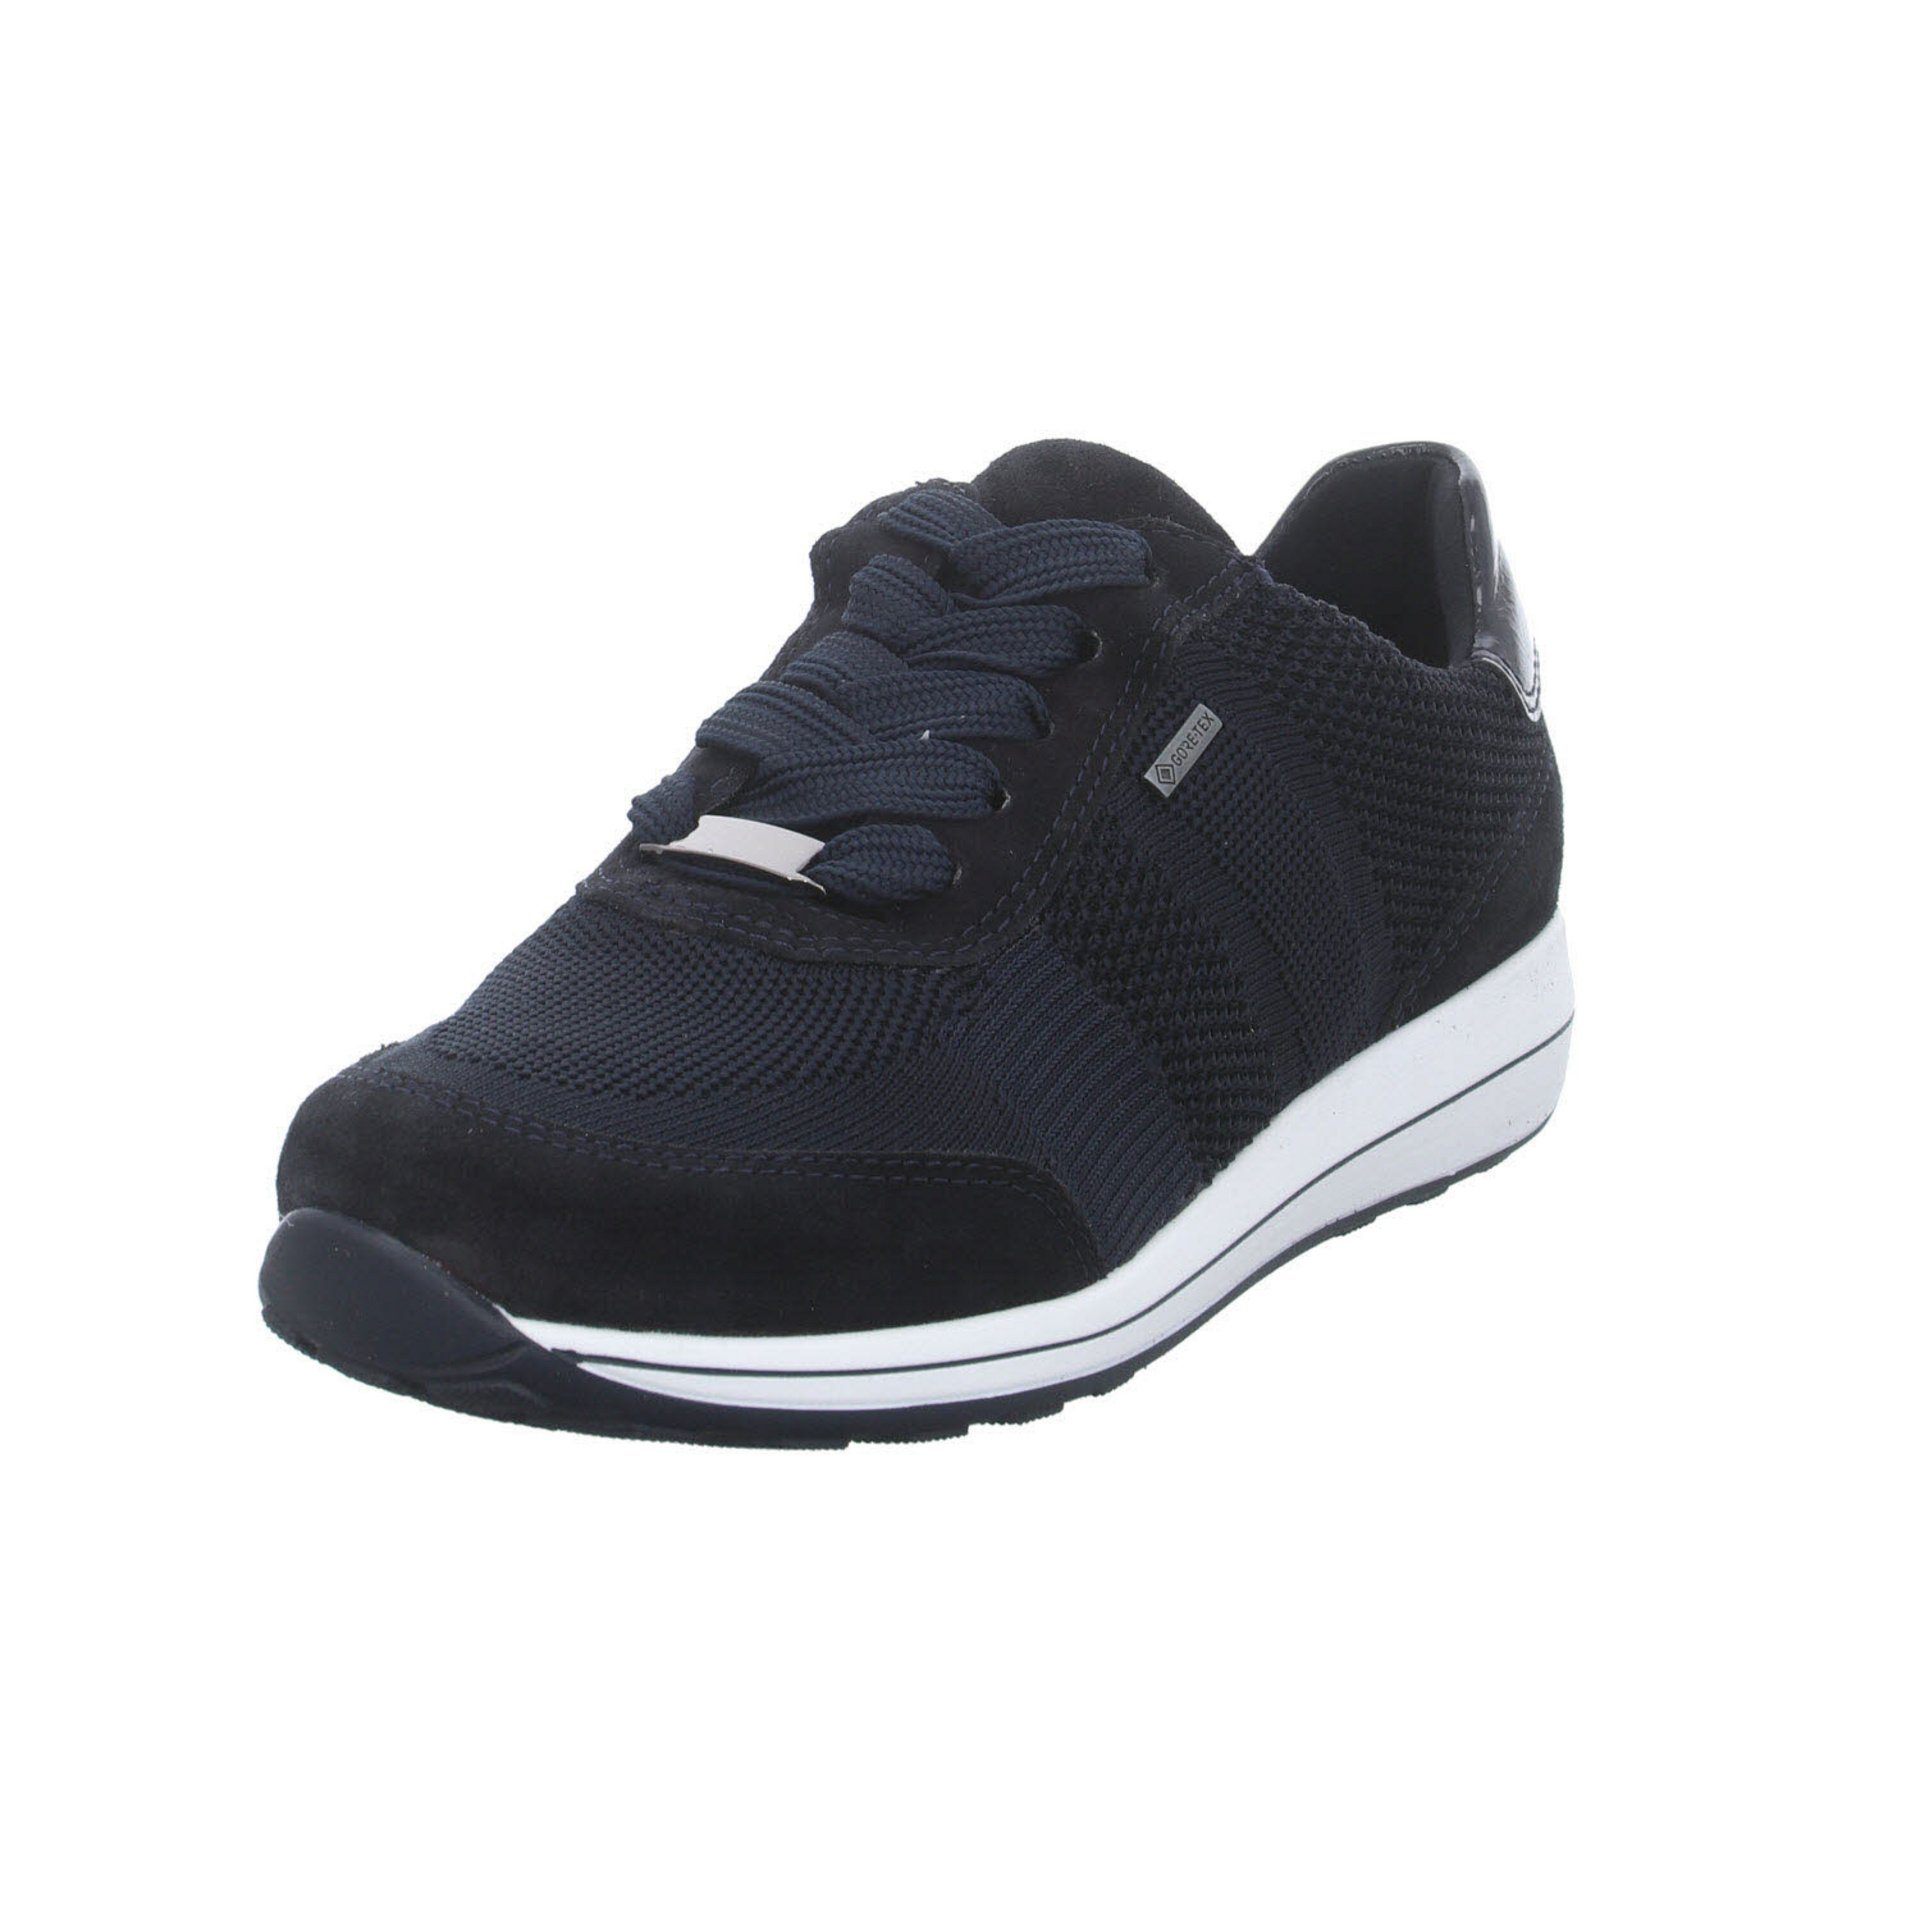 Ara Damen Sneaker Schuhe Schnürschuh Leder-/Textilkombination blau dunkel